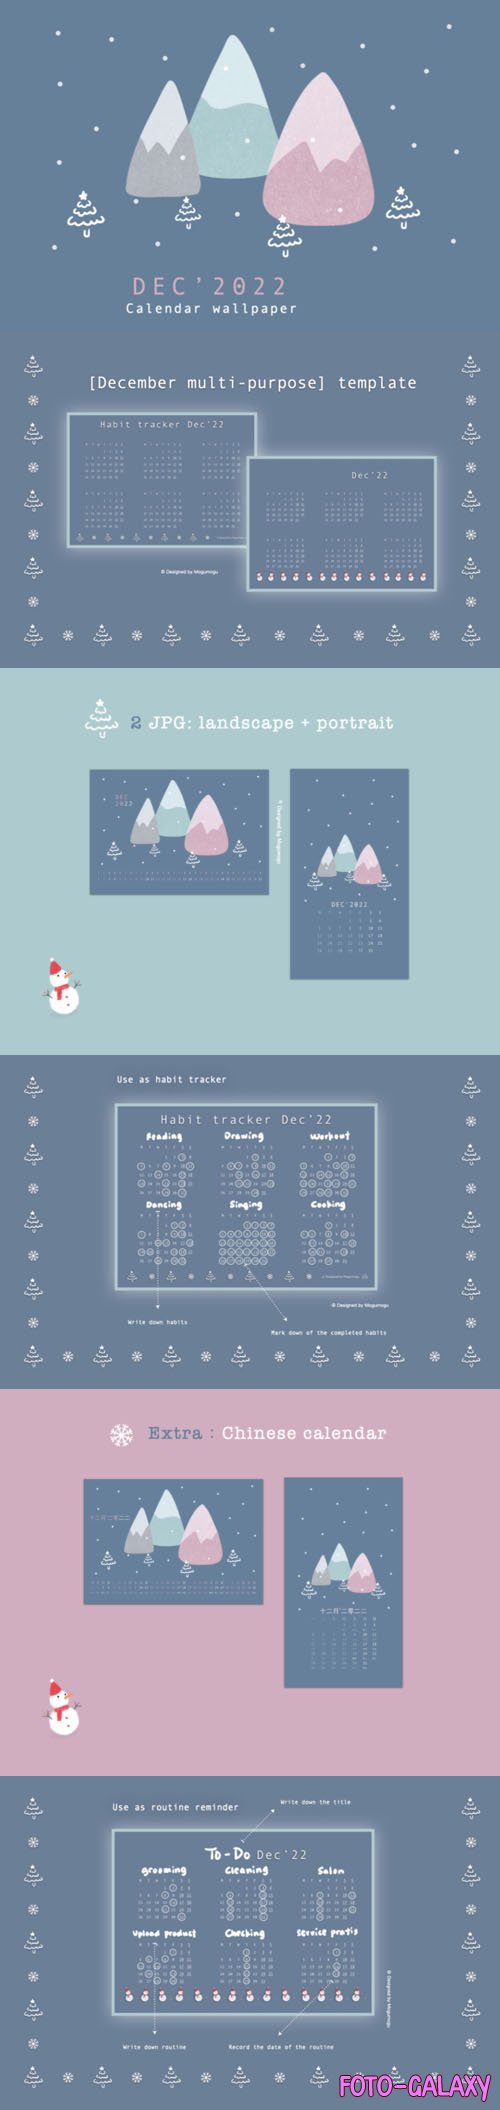 December 2022 Calendar Templates [Landscape & Portrait]